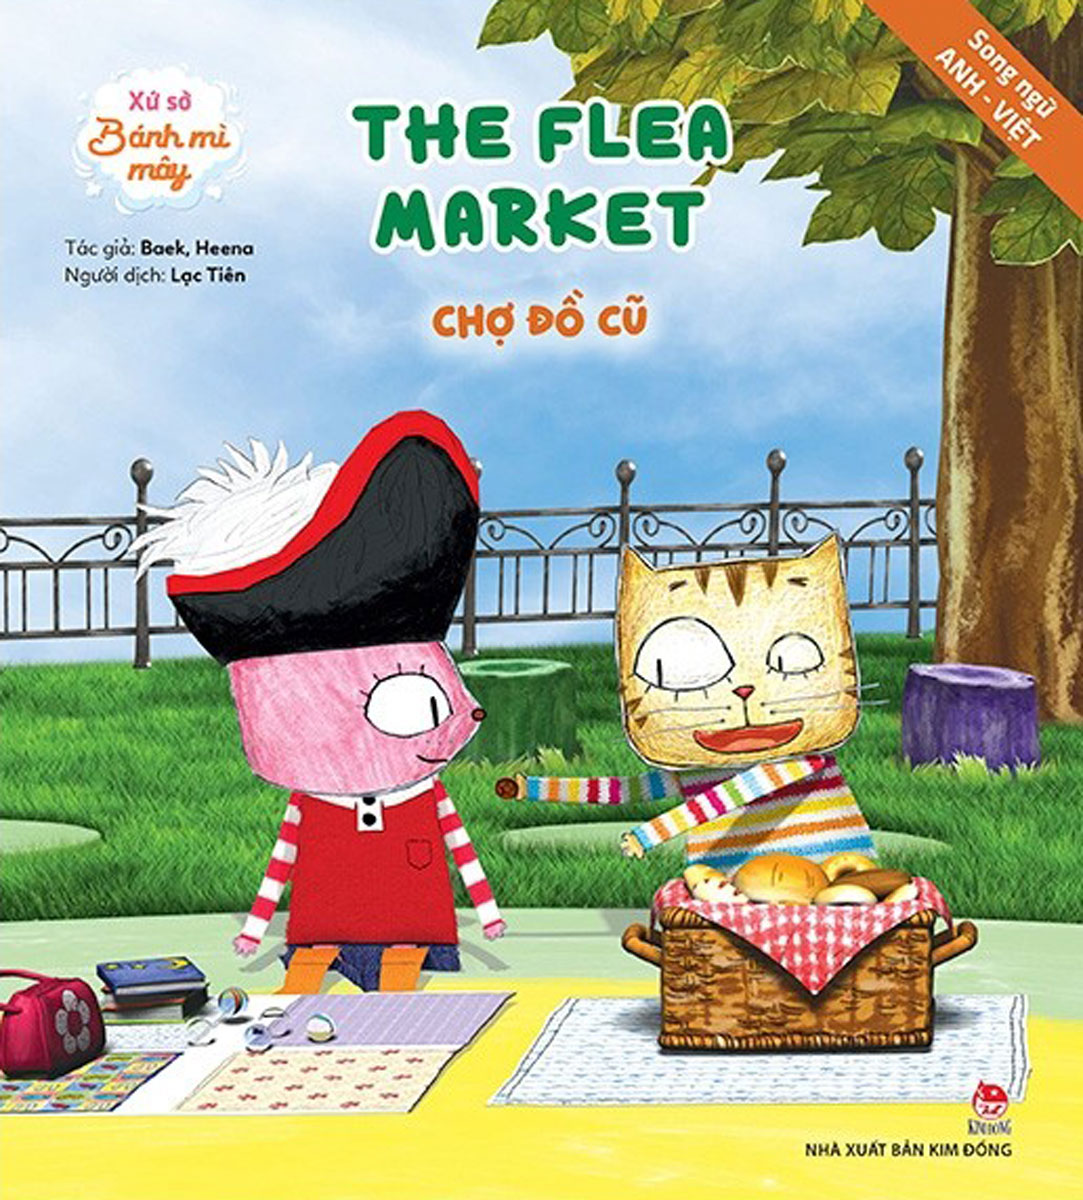 Xứ Sở Bánh Mì Mây: The Flea Market - Chợ Đồ Cũ